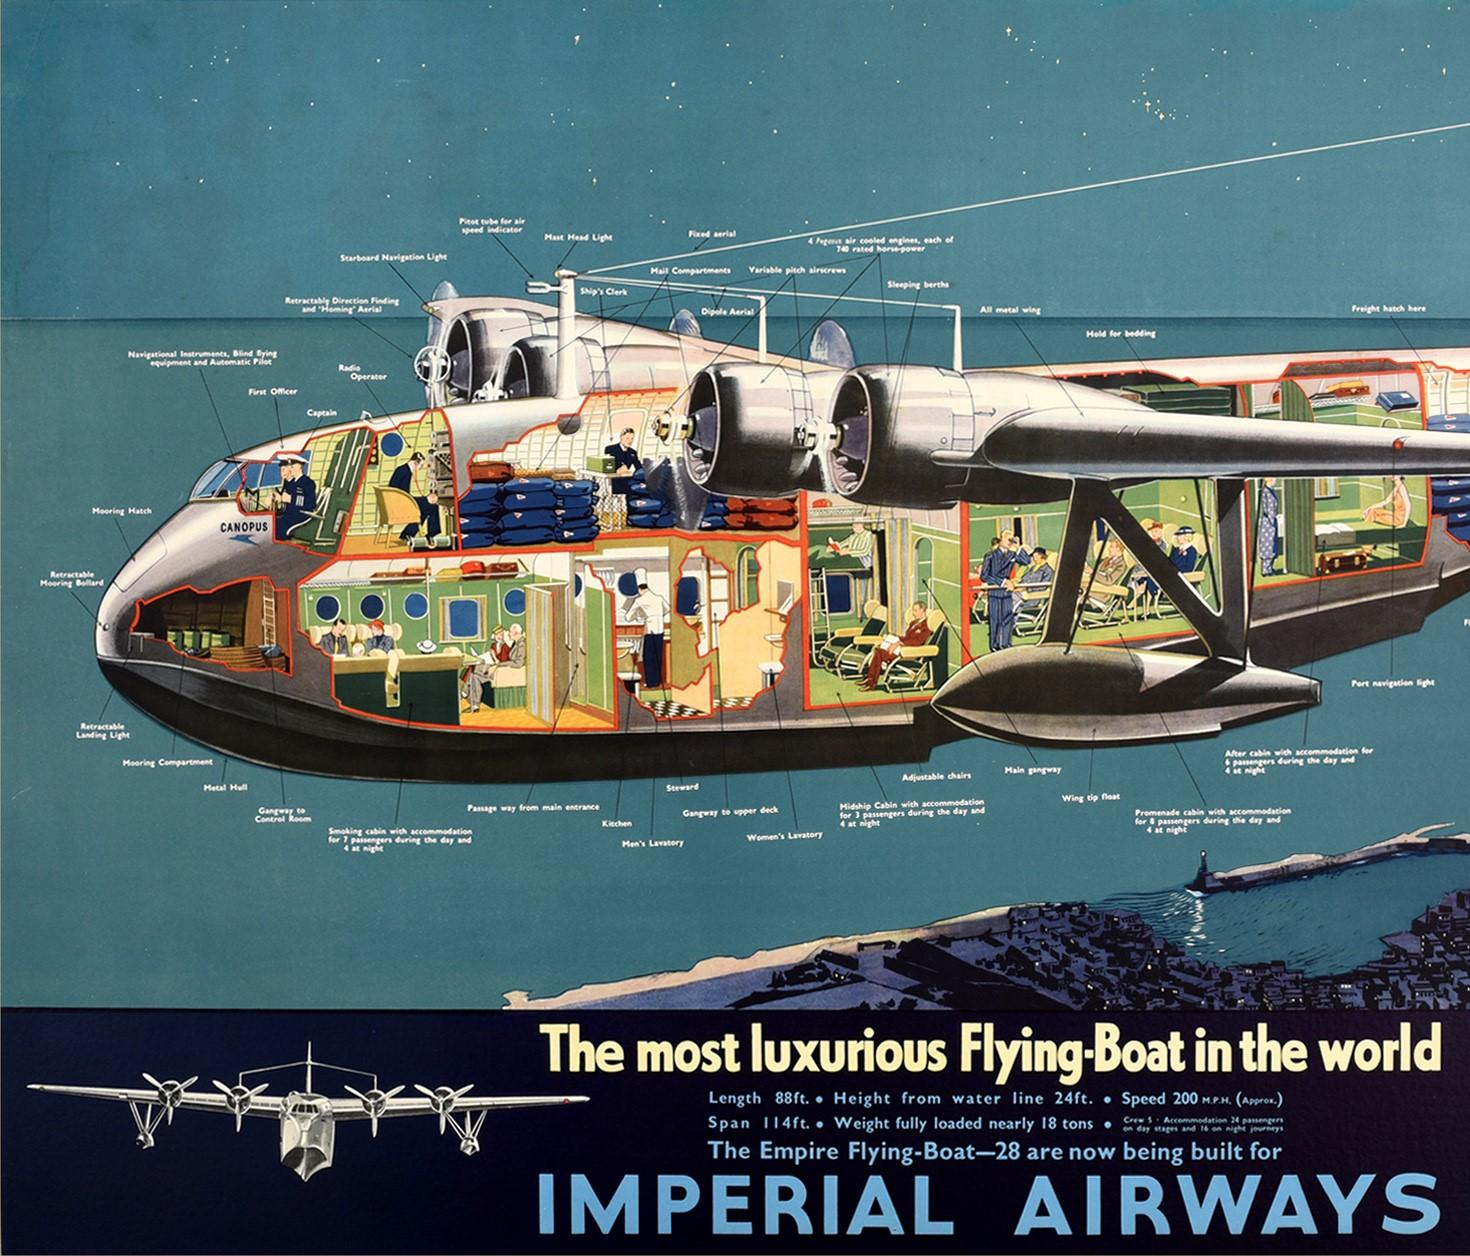 Original Vintage-Reise-Werbeplakat für das Empire Flying-Boat der Imperial Airways - Länge 88ft Höhe ab Wasserlinie 24ft Geschwindigkeit 200mph Spannweite 114ft Gewicht voll beladen 18 Tonnen - 28 werden jetzt für den Einsatz auf den Empire-Routen